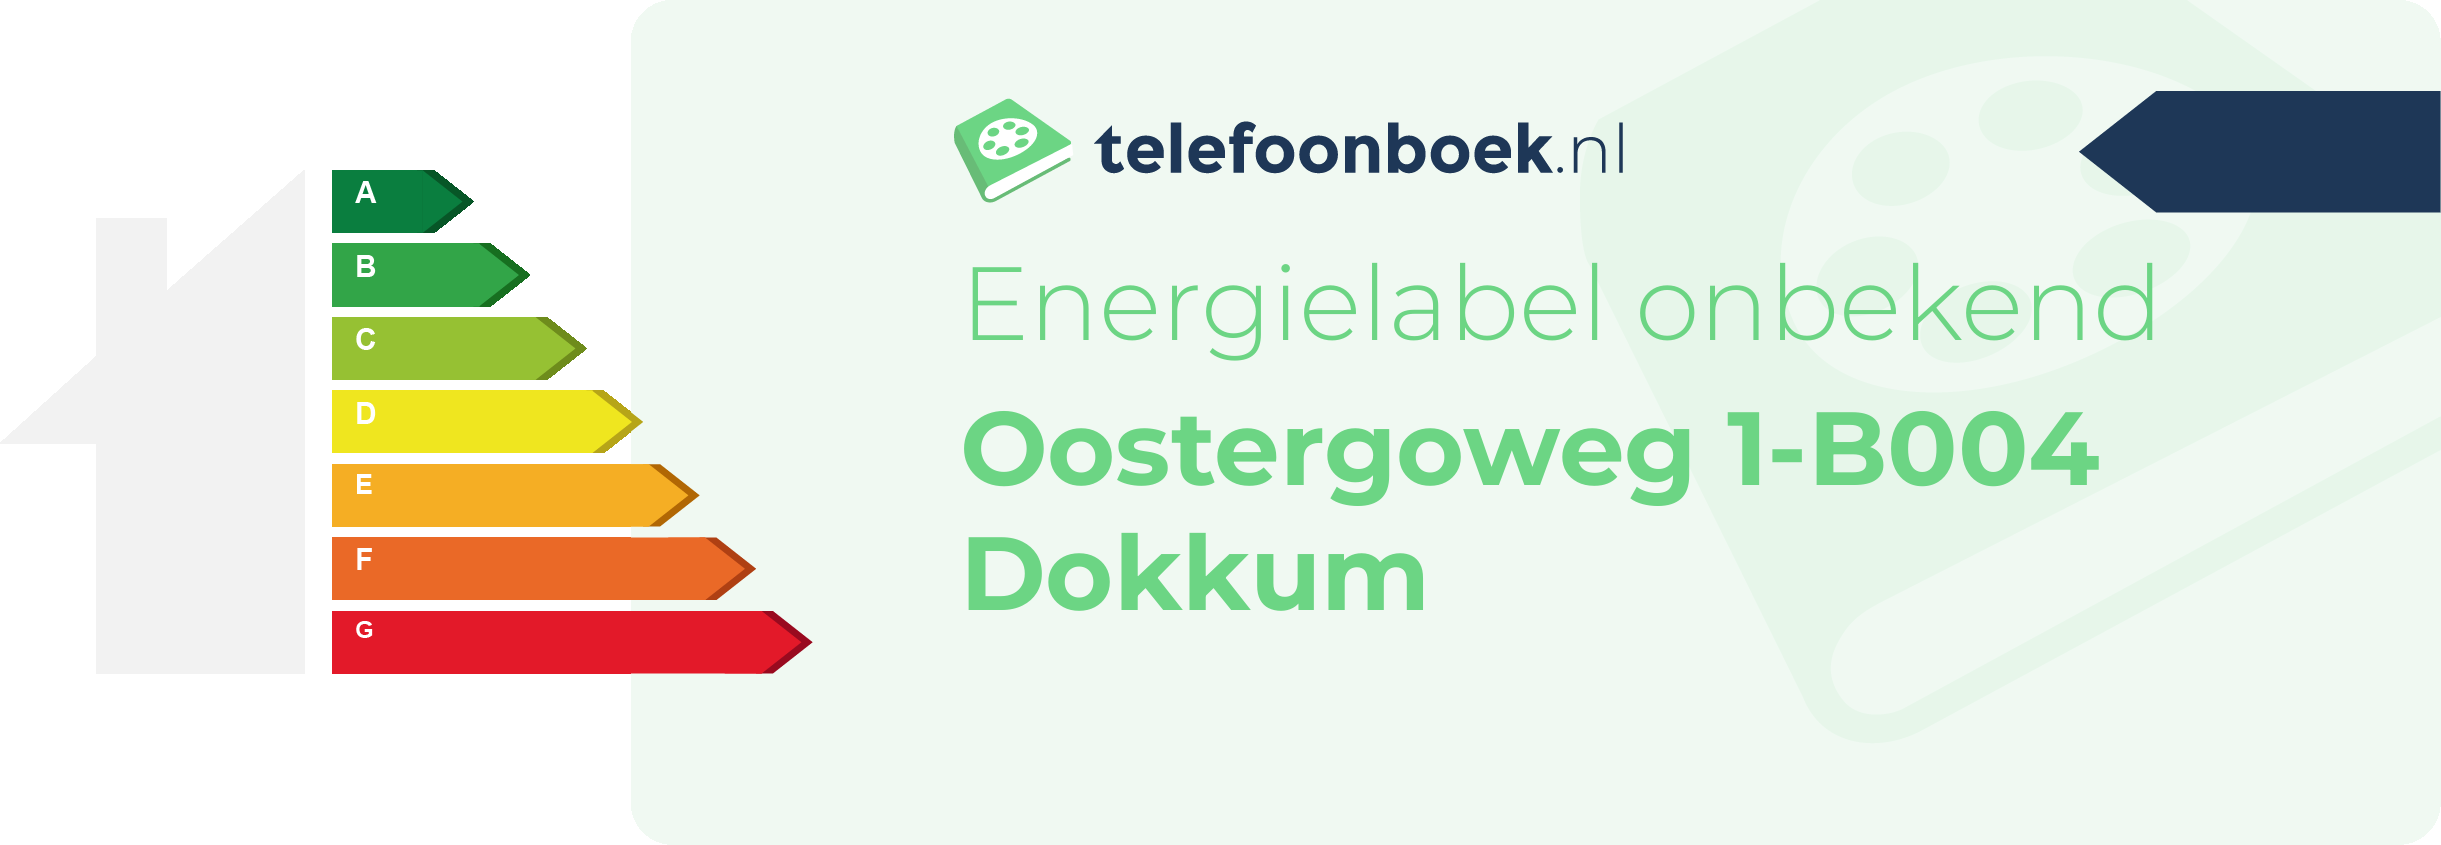 Energielabel Oostergoweg 1-B004 Dokkum